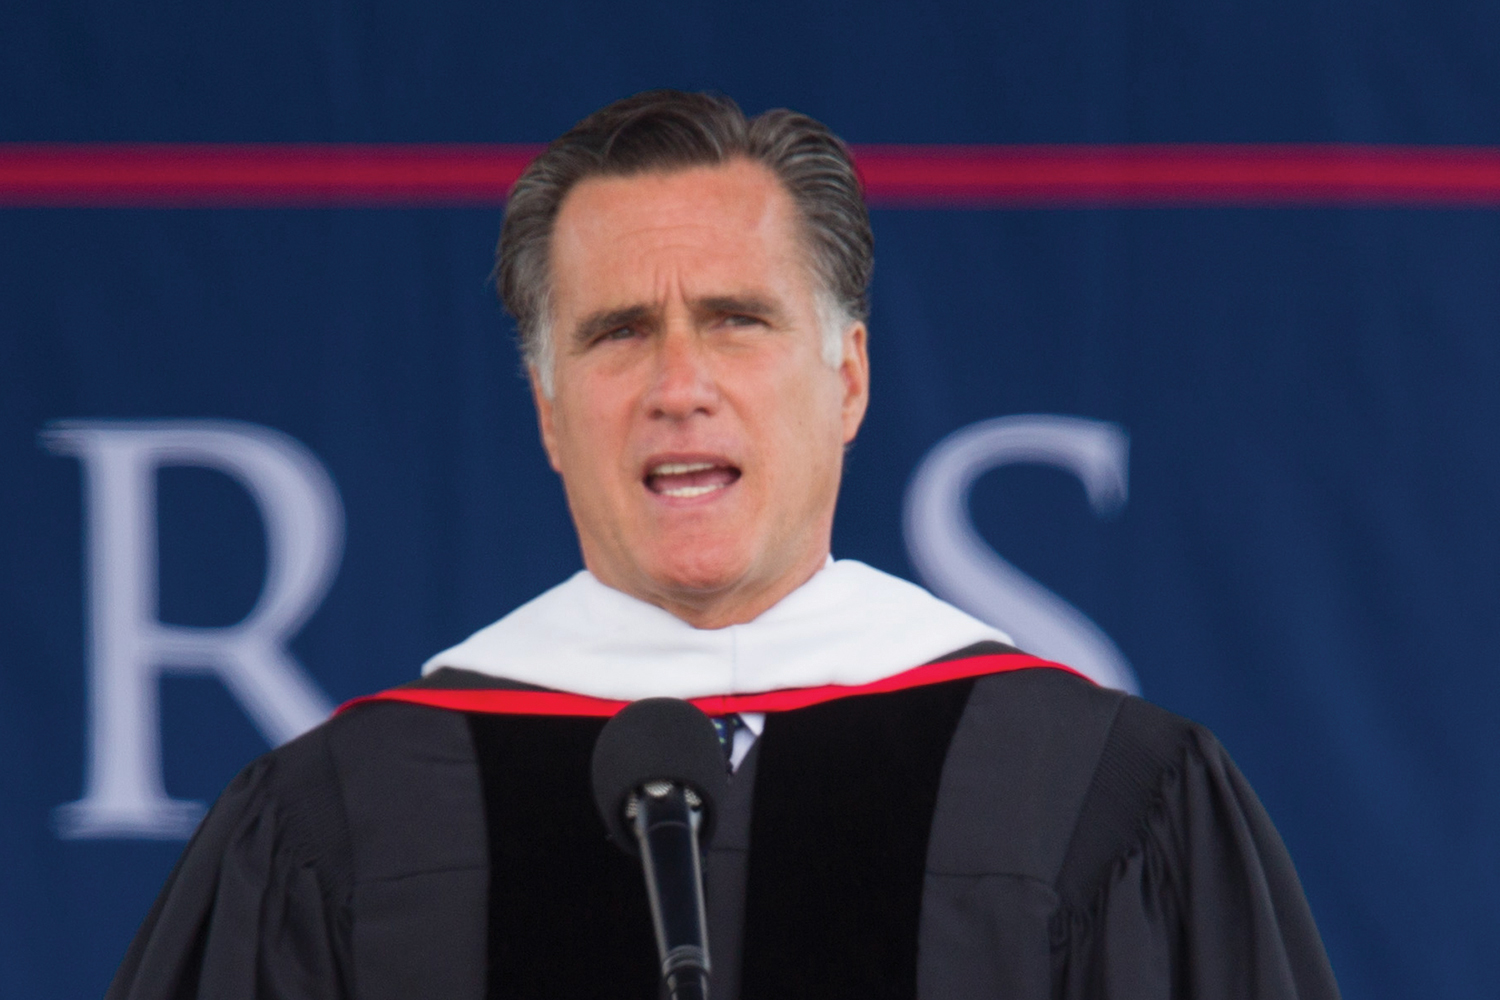 Mitt Romney Ljws17